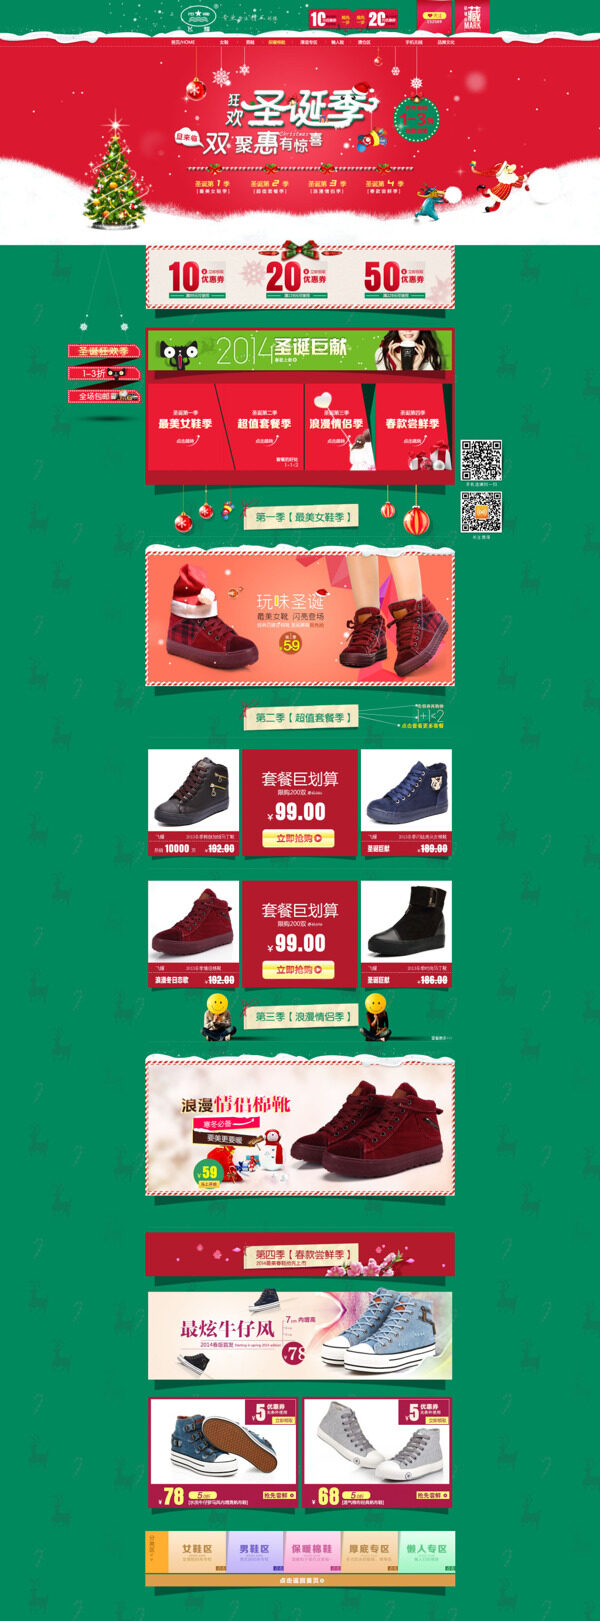 淘宝圣诞节女鞋促销海报